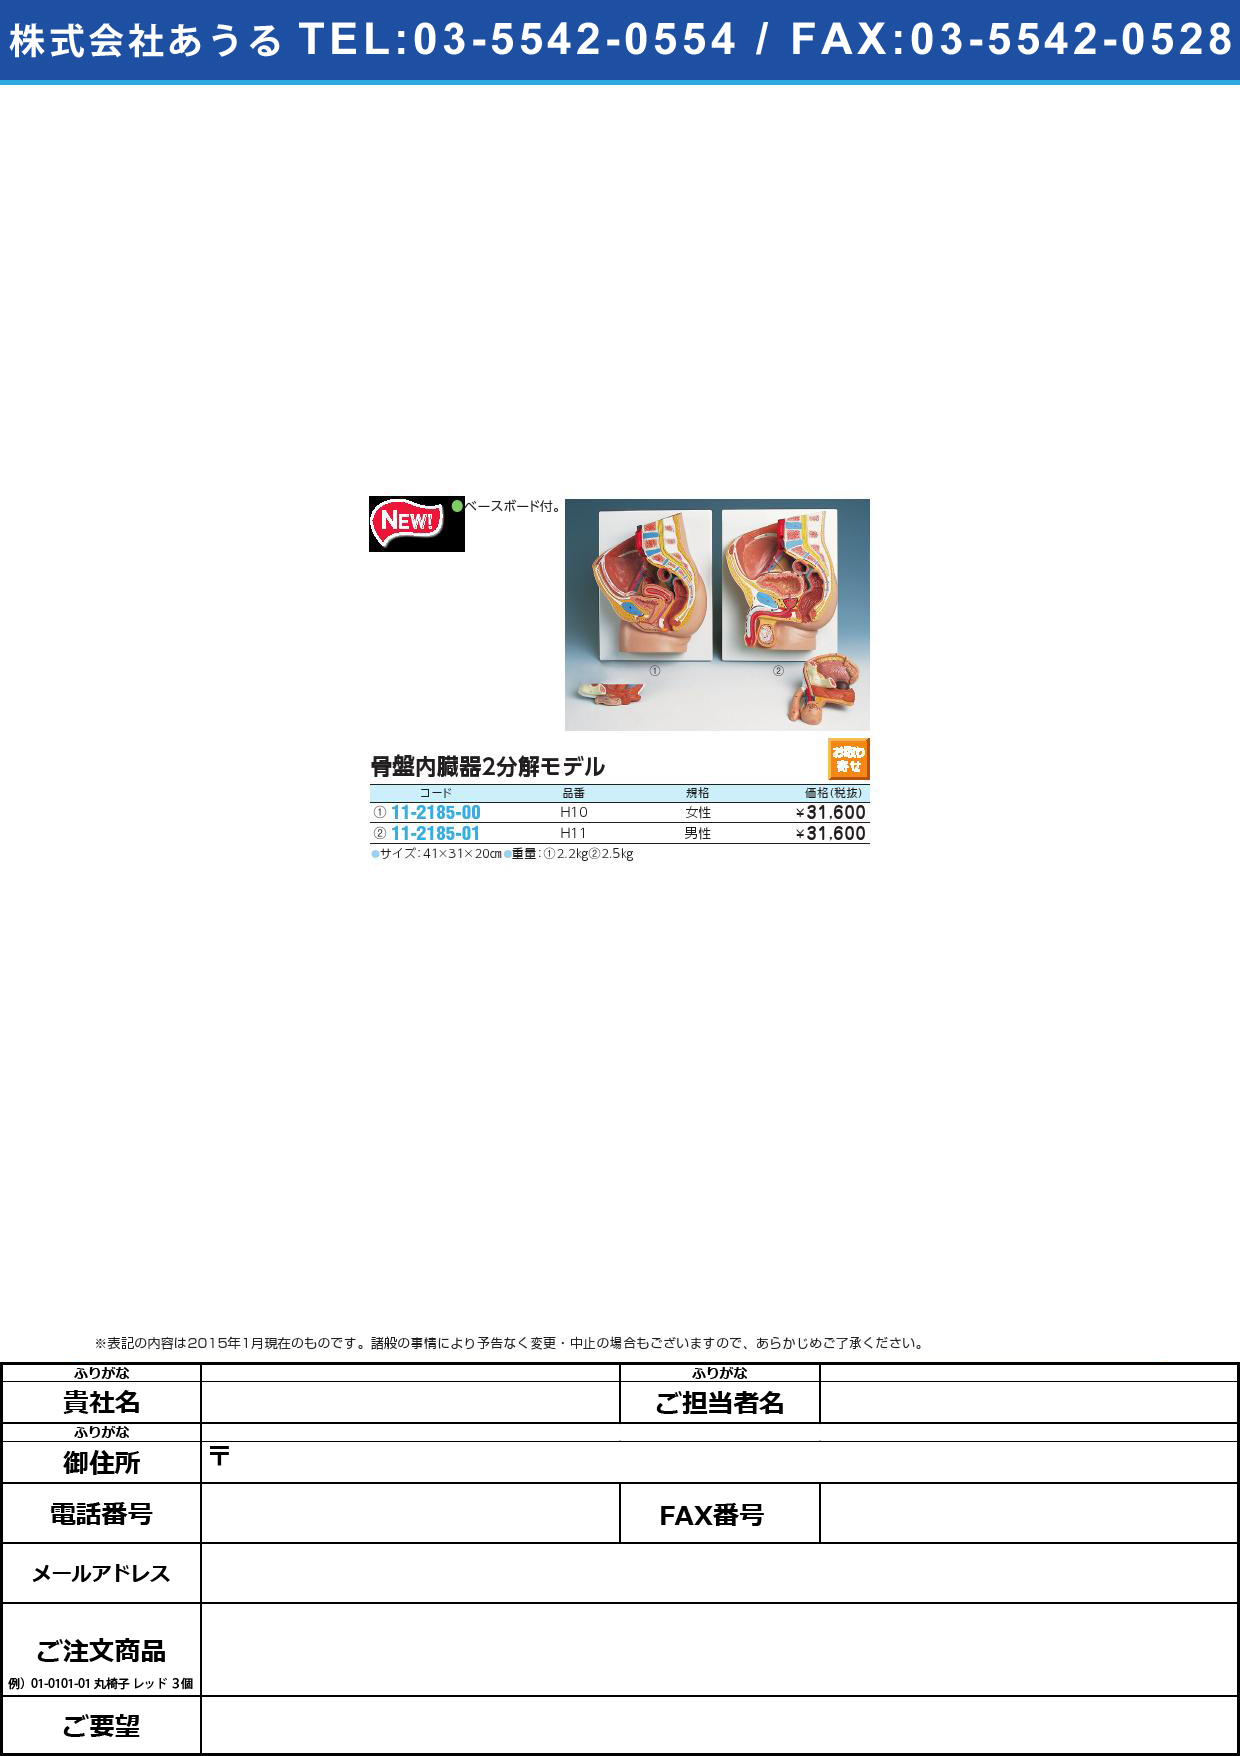 (11-2185-01)骨盤内臓器モデル（男性・２分解） H11 (41X31X17CM)ｺﾂﾊﾞﾝﾅｲｿﾞｳｷﾓﾃﾞﾙ(11-2185-01)【1台単位】【2015年カタログ商品】